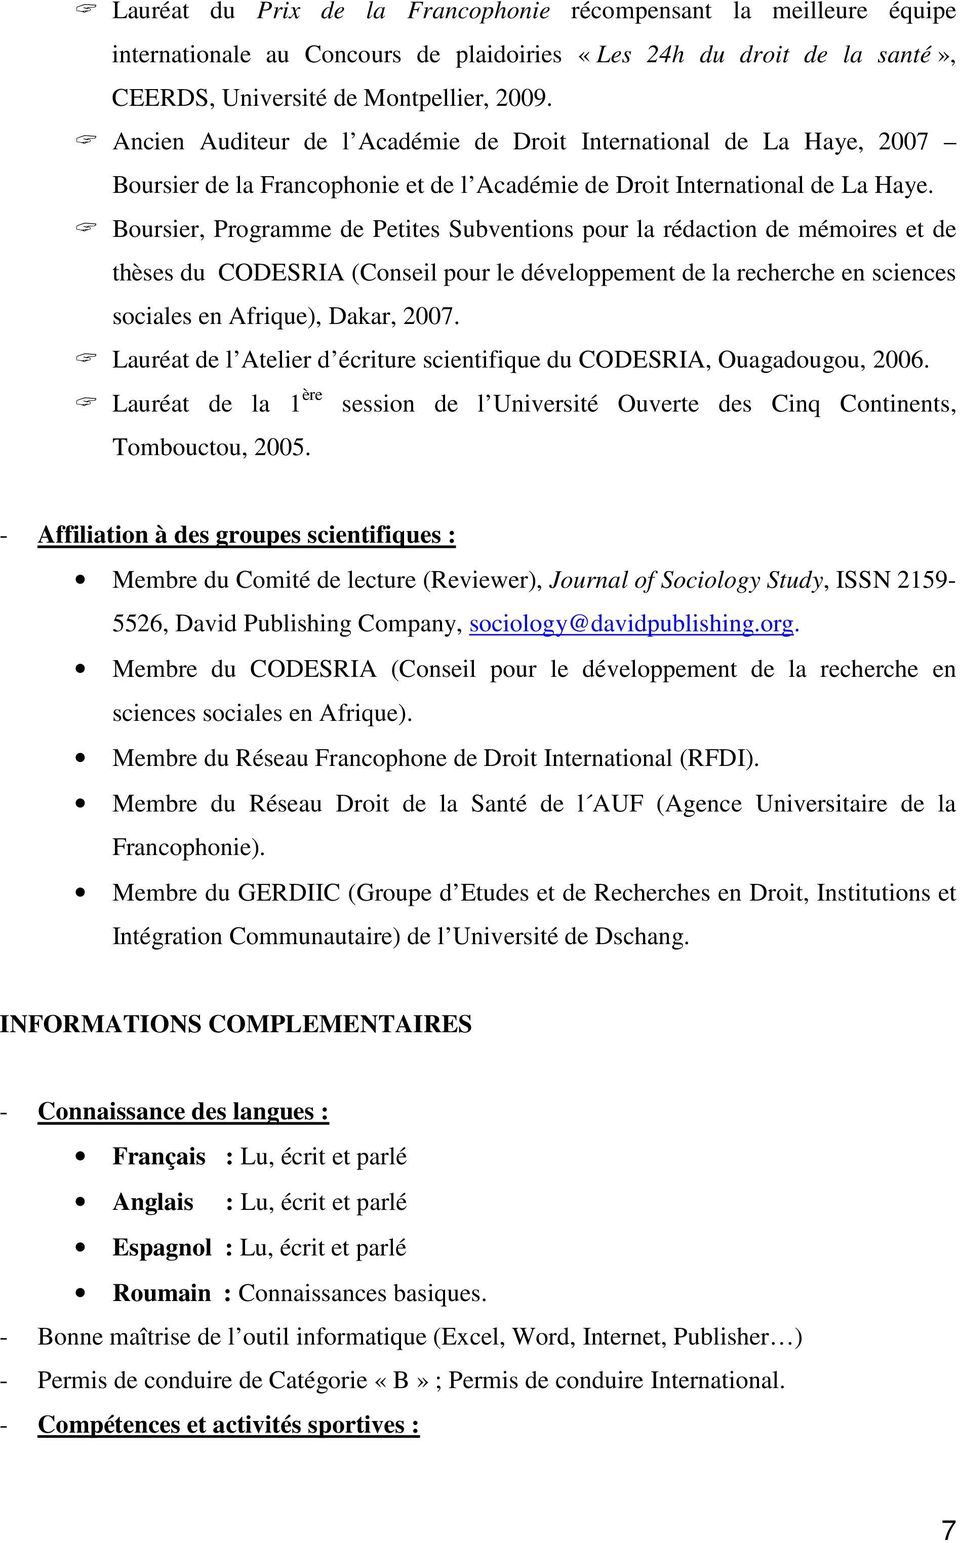 Boursier, Programme de Petites Subventions pour la rédaction de mémoires et de thèses du CODESRIA (Conseil pour le développement de la recherche en sciences sociales en Afrique), Dakar, 2007.